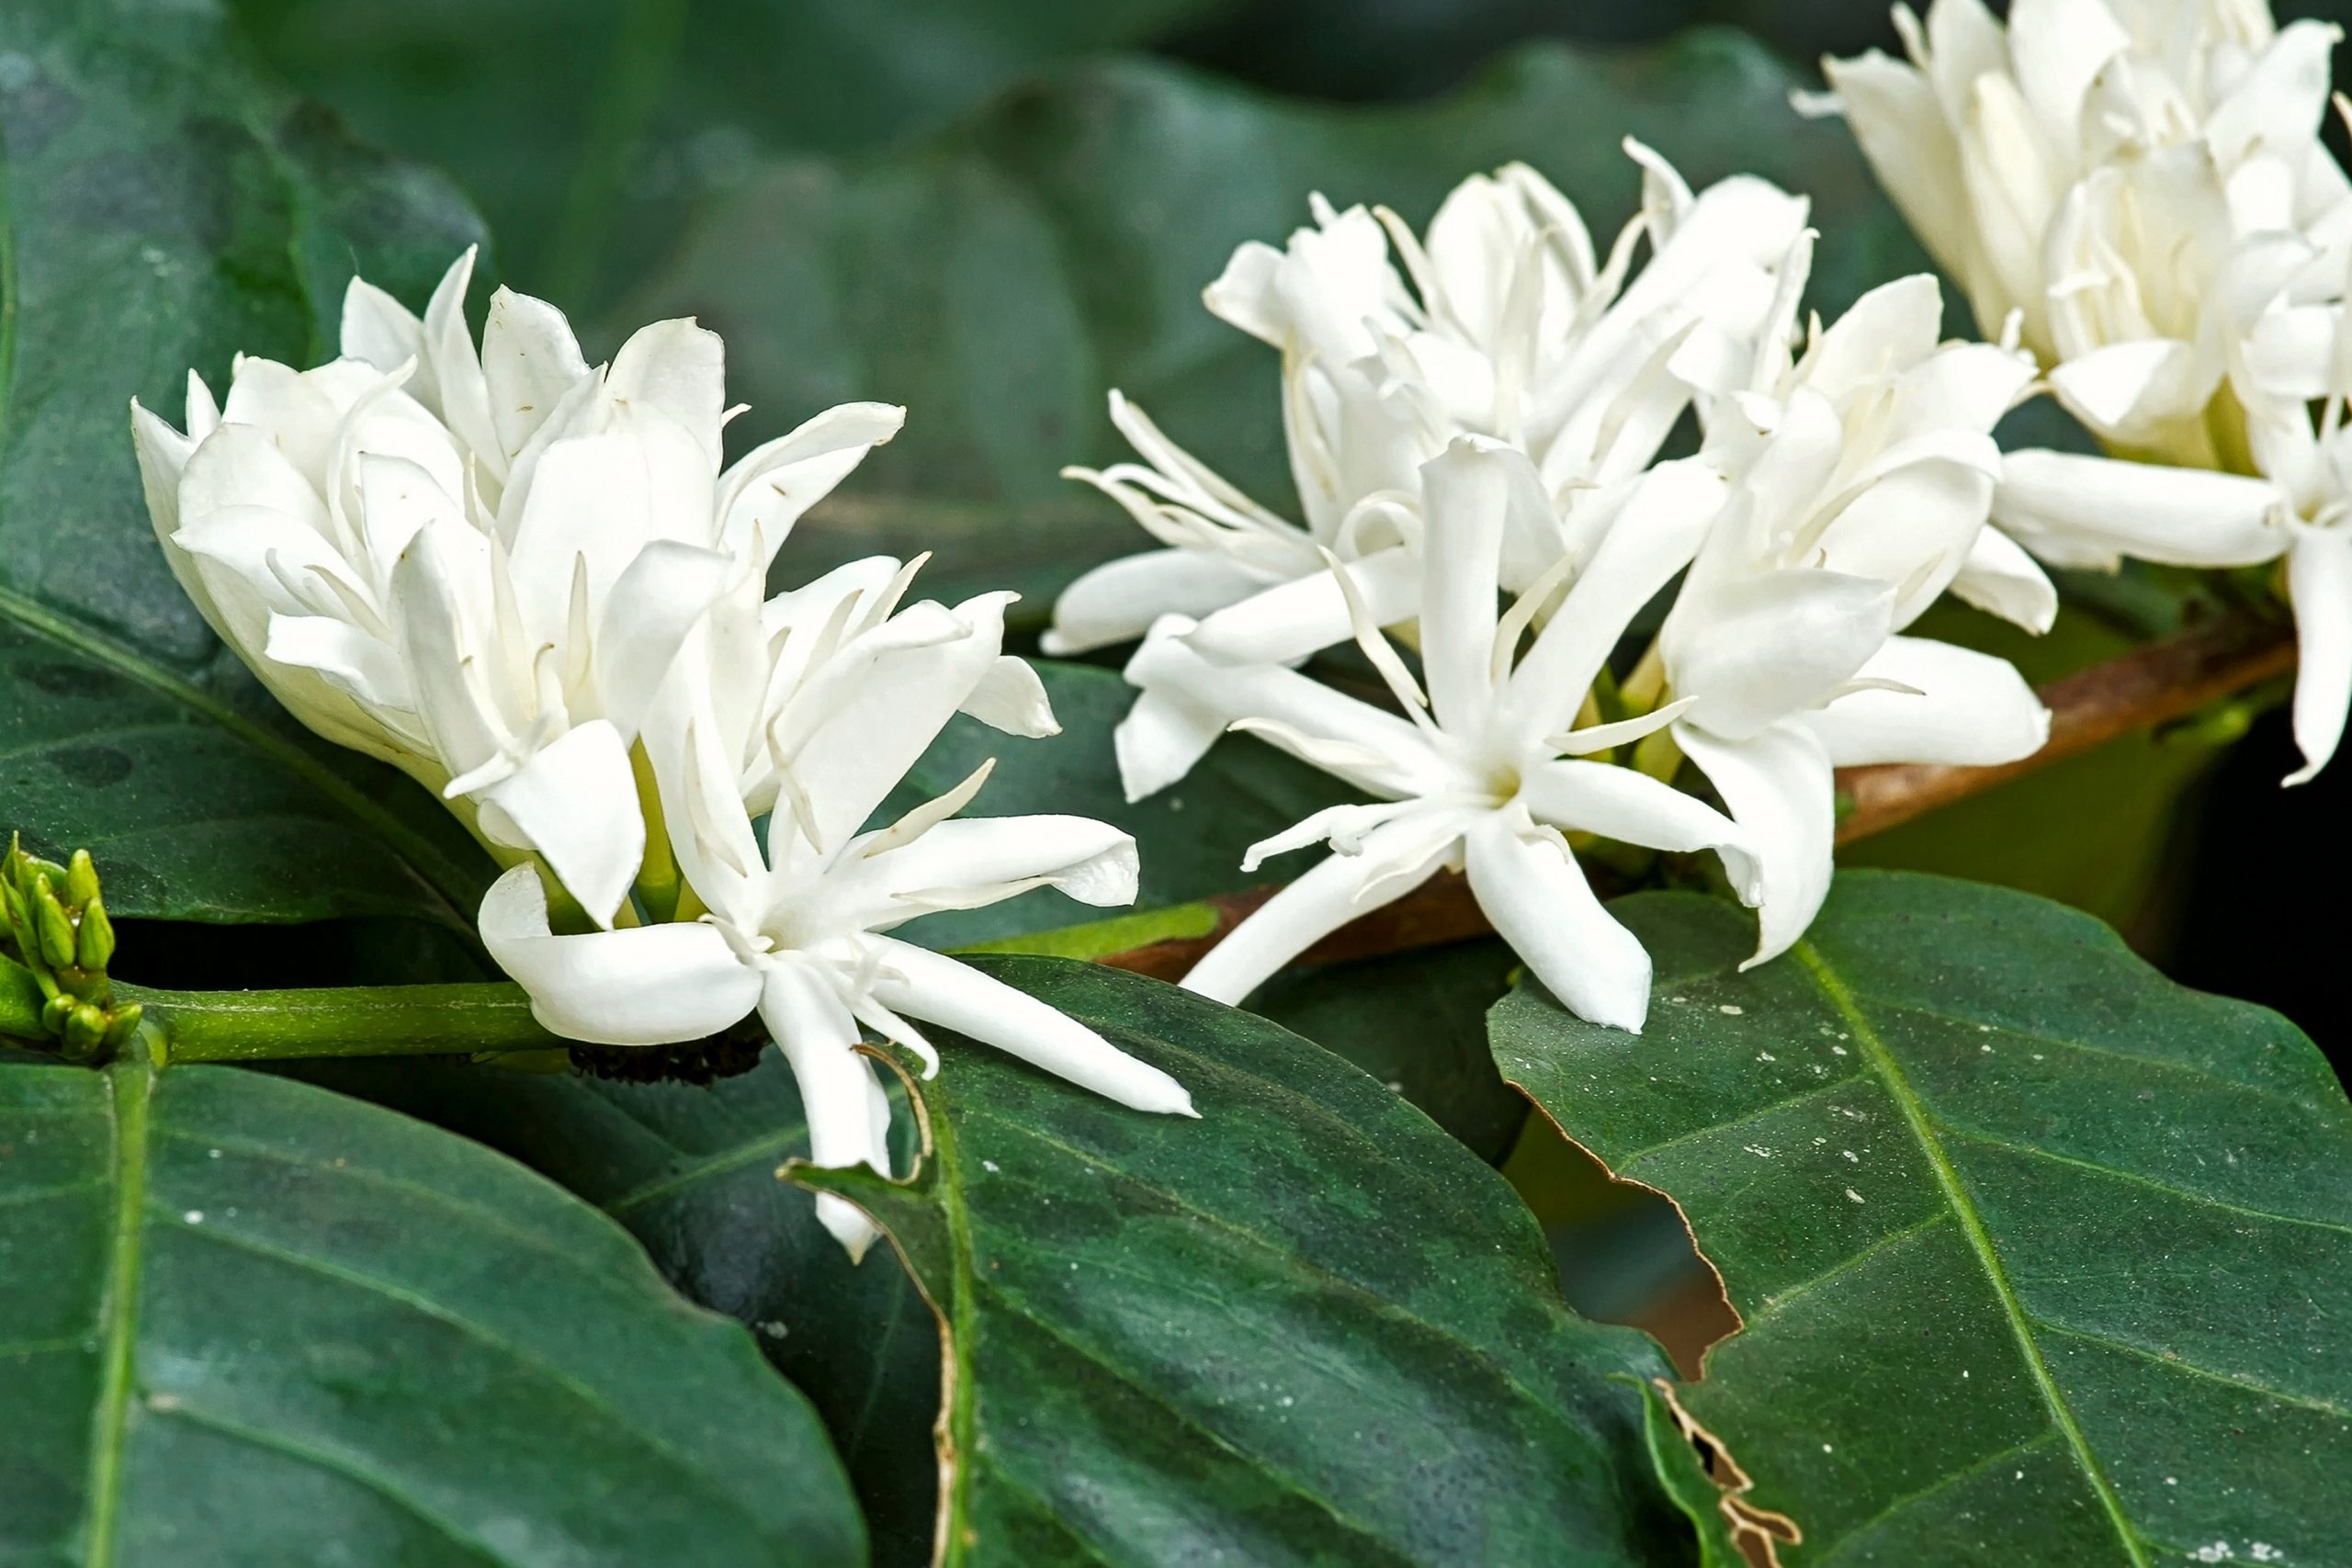 Kona coffee flowers